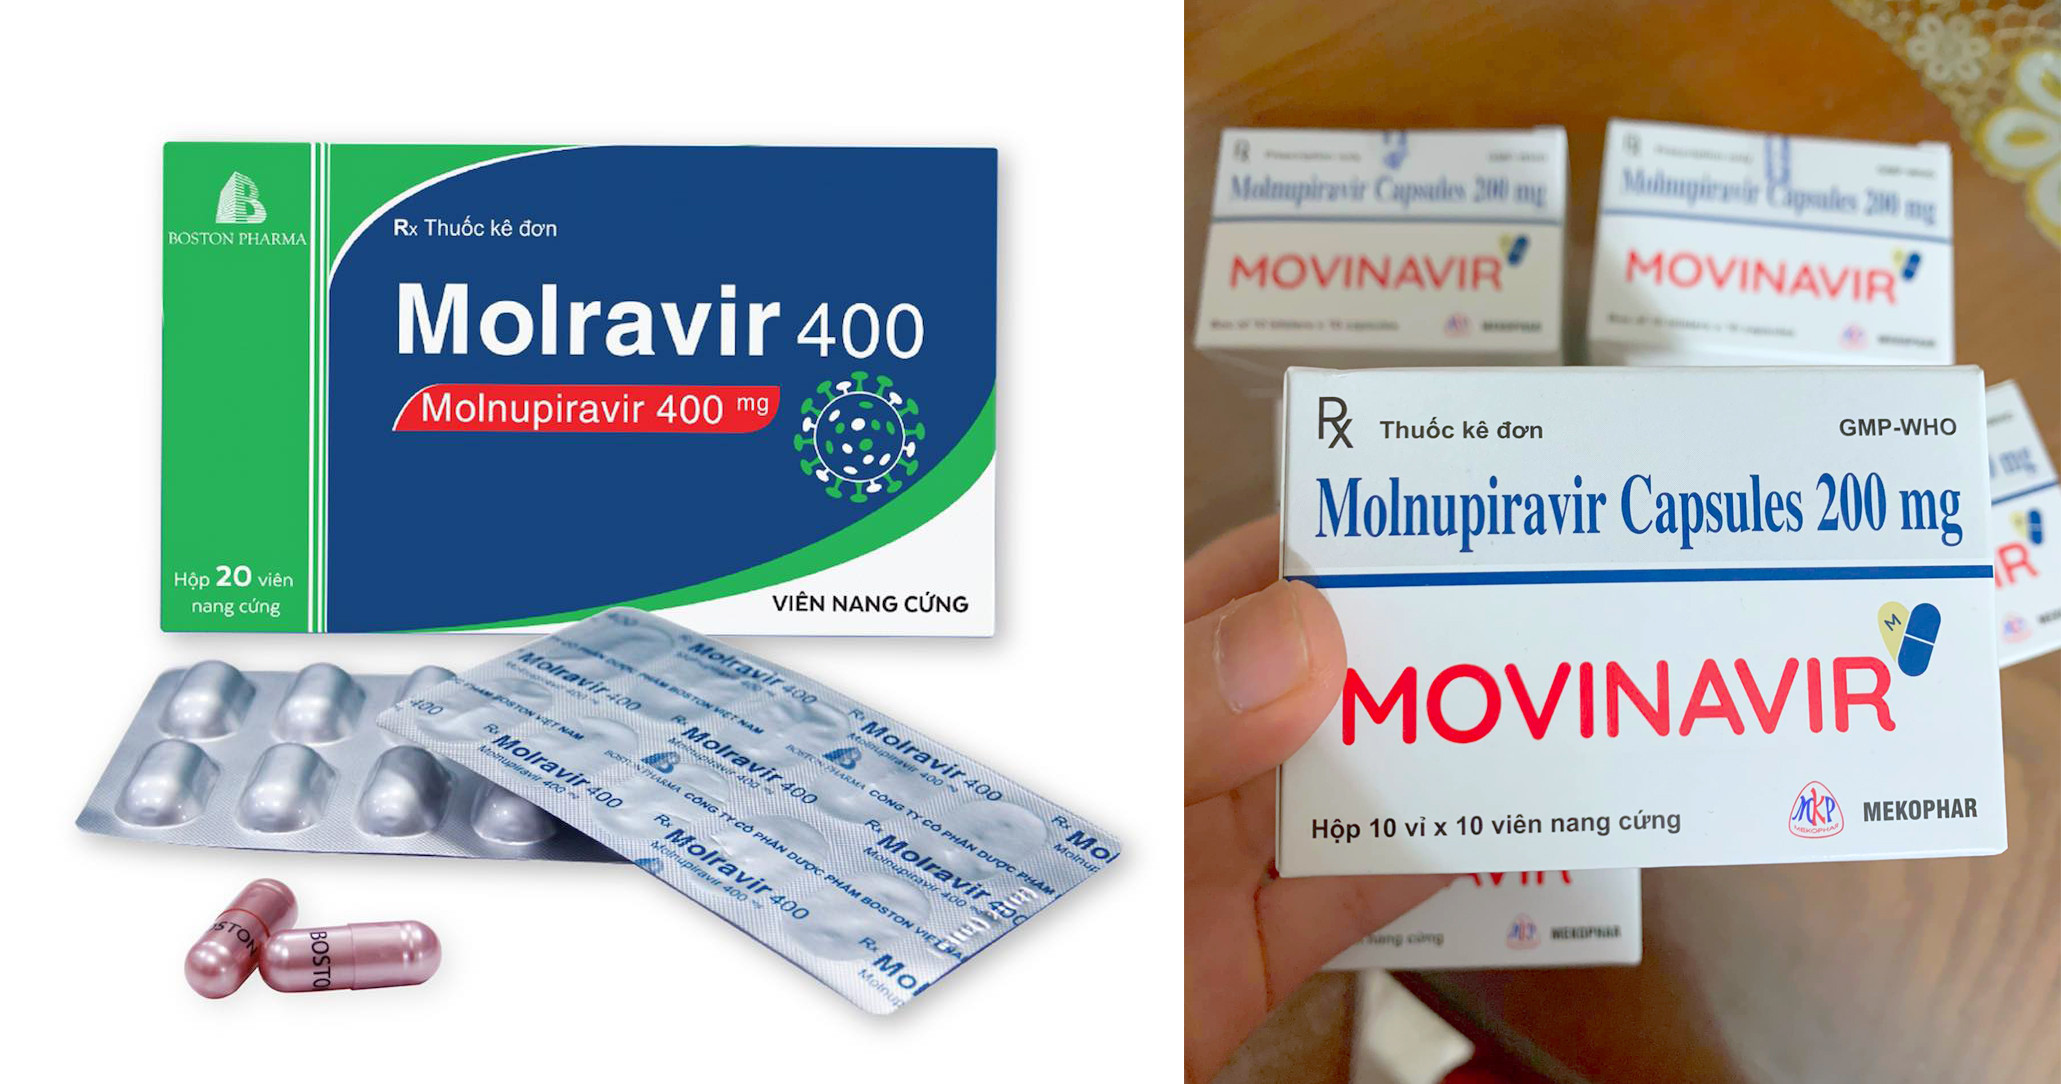 Hiện Cục Quản lý dược, Bộ Y tế đã cấp phép một số loại thuốc kháng vi - rút điều trị Covid - 19 trên thị trường. Ảnh: Q.A